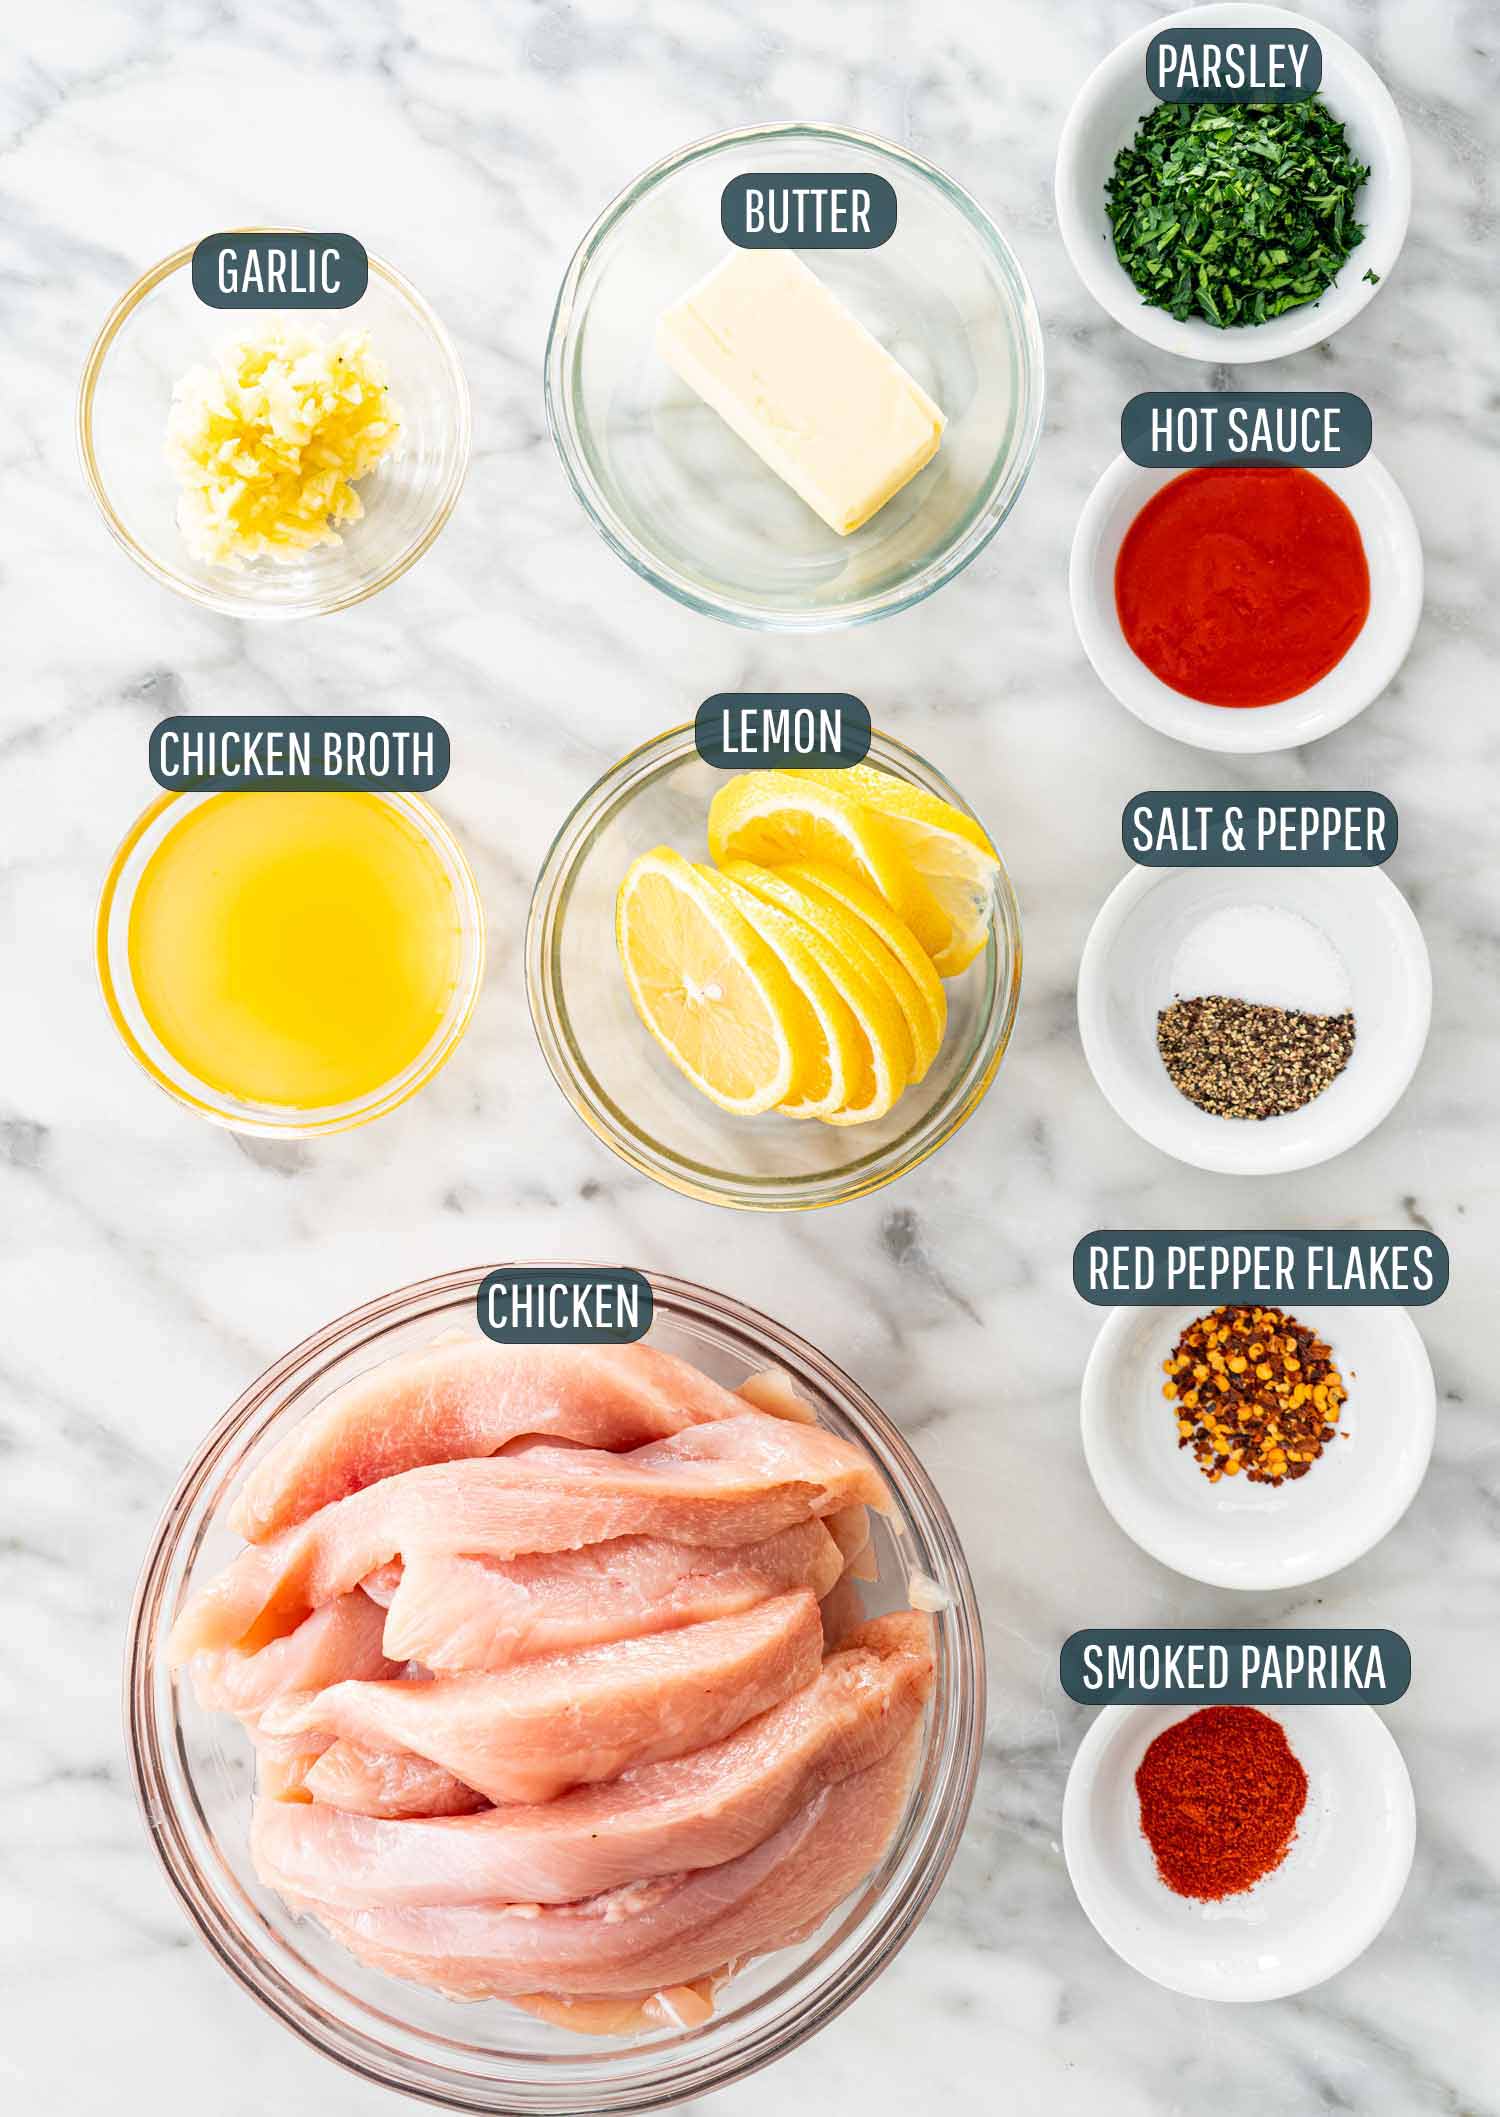 ingredients needed to make garlic butter chicken.